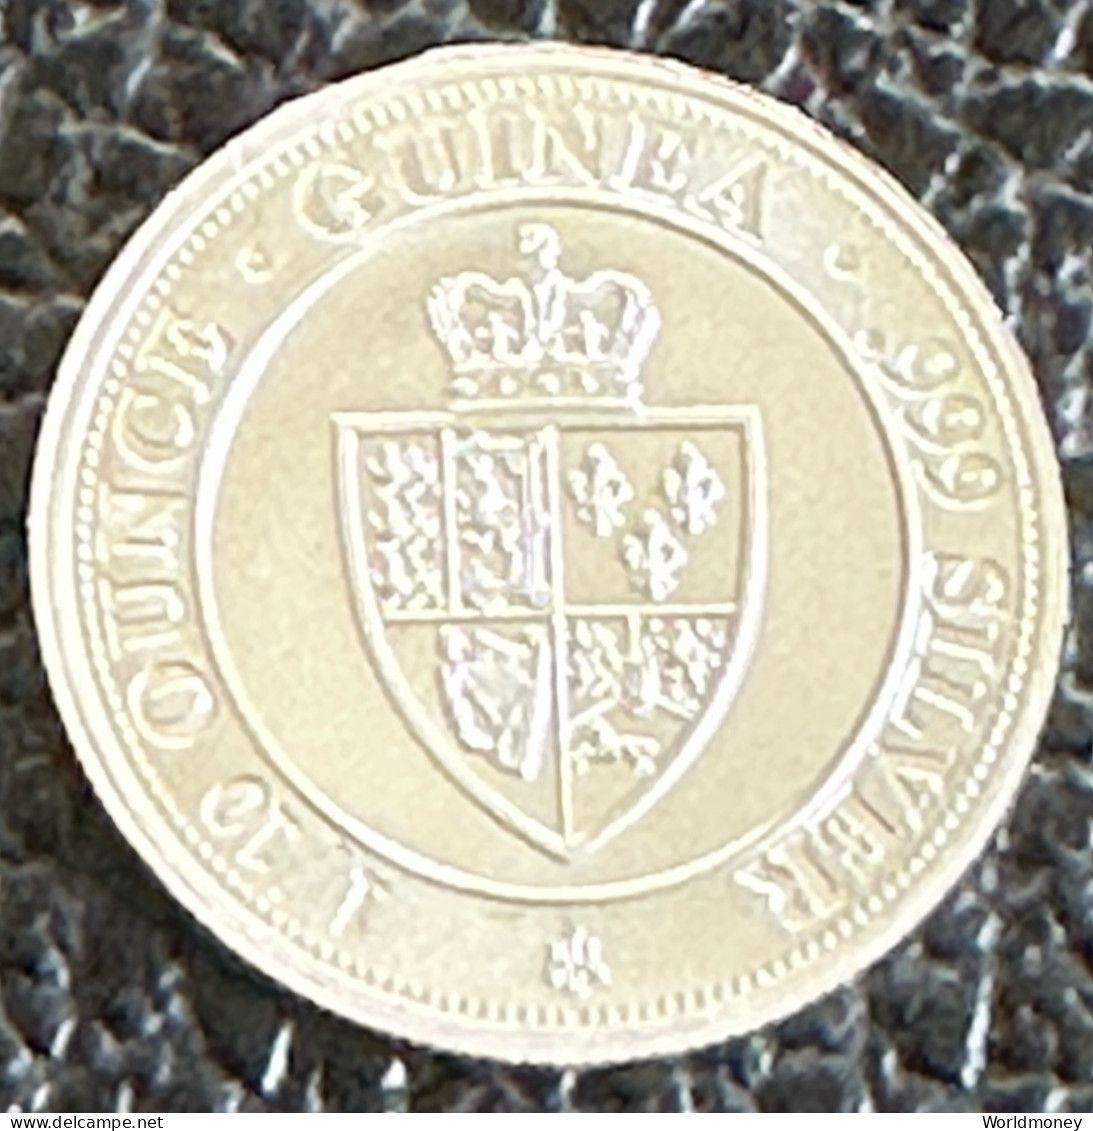 Saint Helena 10 Pence 2020  -  1/10 Oz Spade Guinea Shield (Silver) - Santa Helena